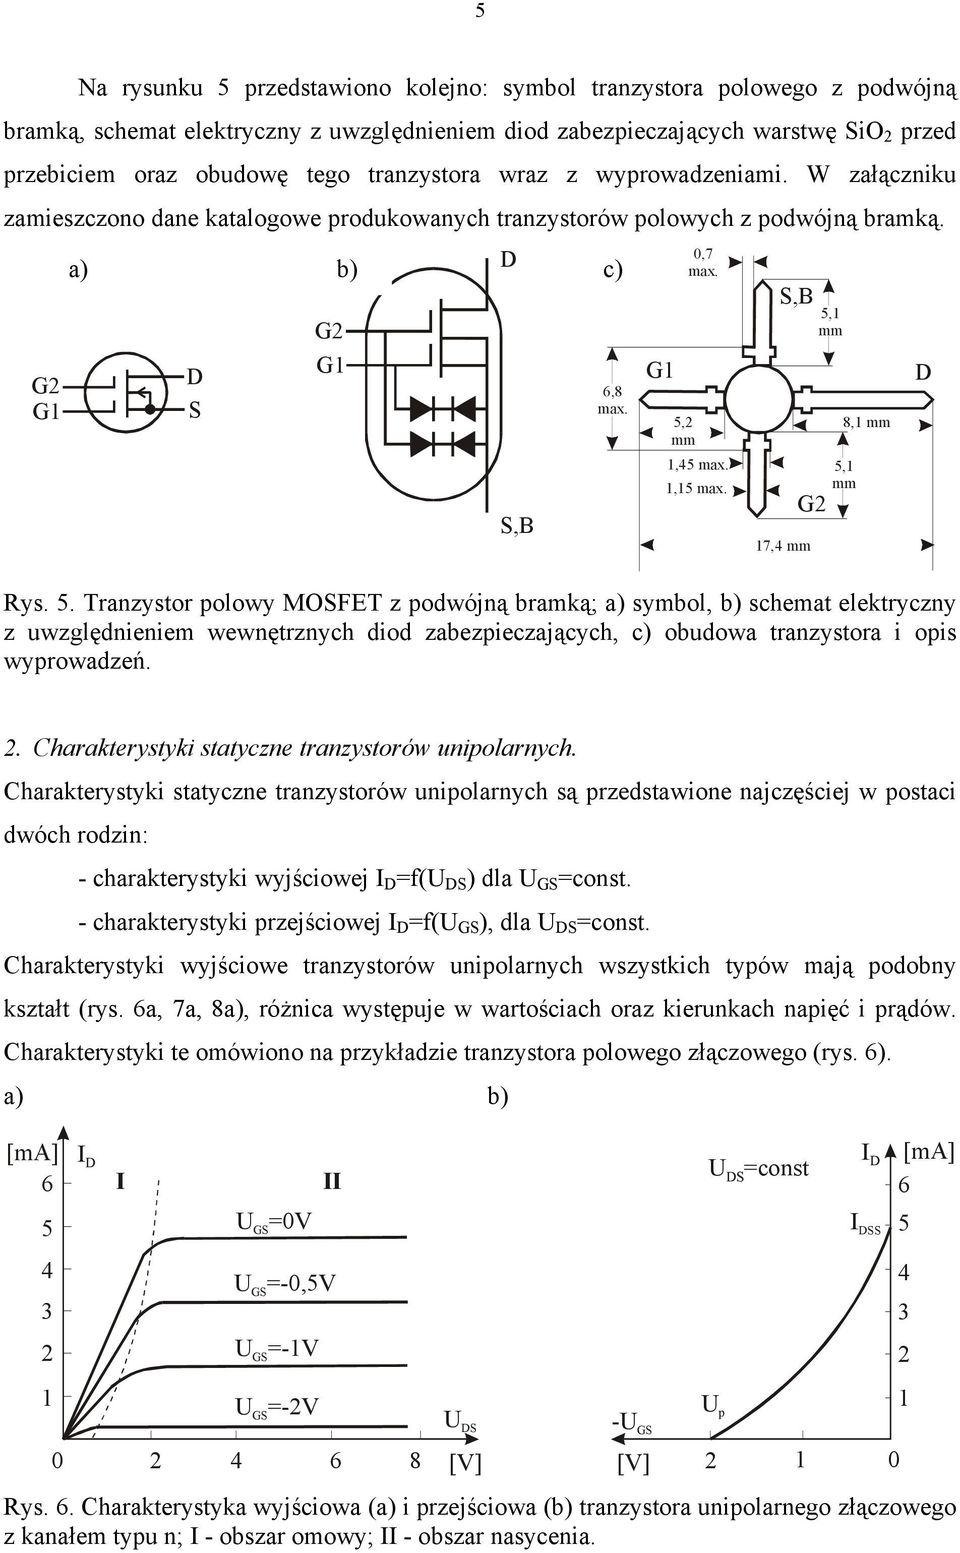 5. Tranzystor polowy MOFET z podwójną bramką; a) symbol, b) schemat elektryczny z uwzględnieniem wewnętrznych diod zabezpieczających, c) obudowa tranzystora i opis wyprowadzeń. 5,1 mm 8,1 mm 5,1 mm.